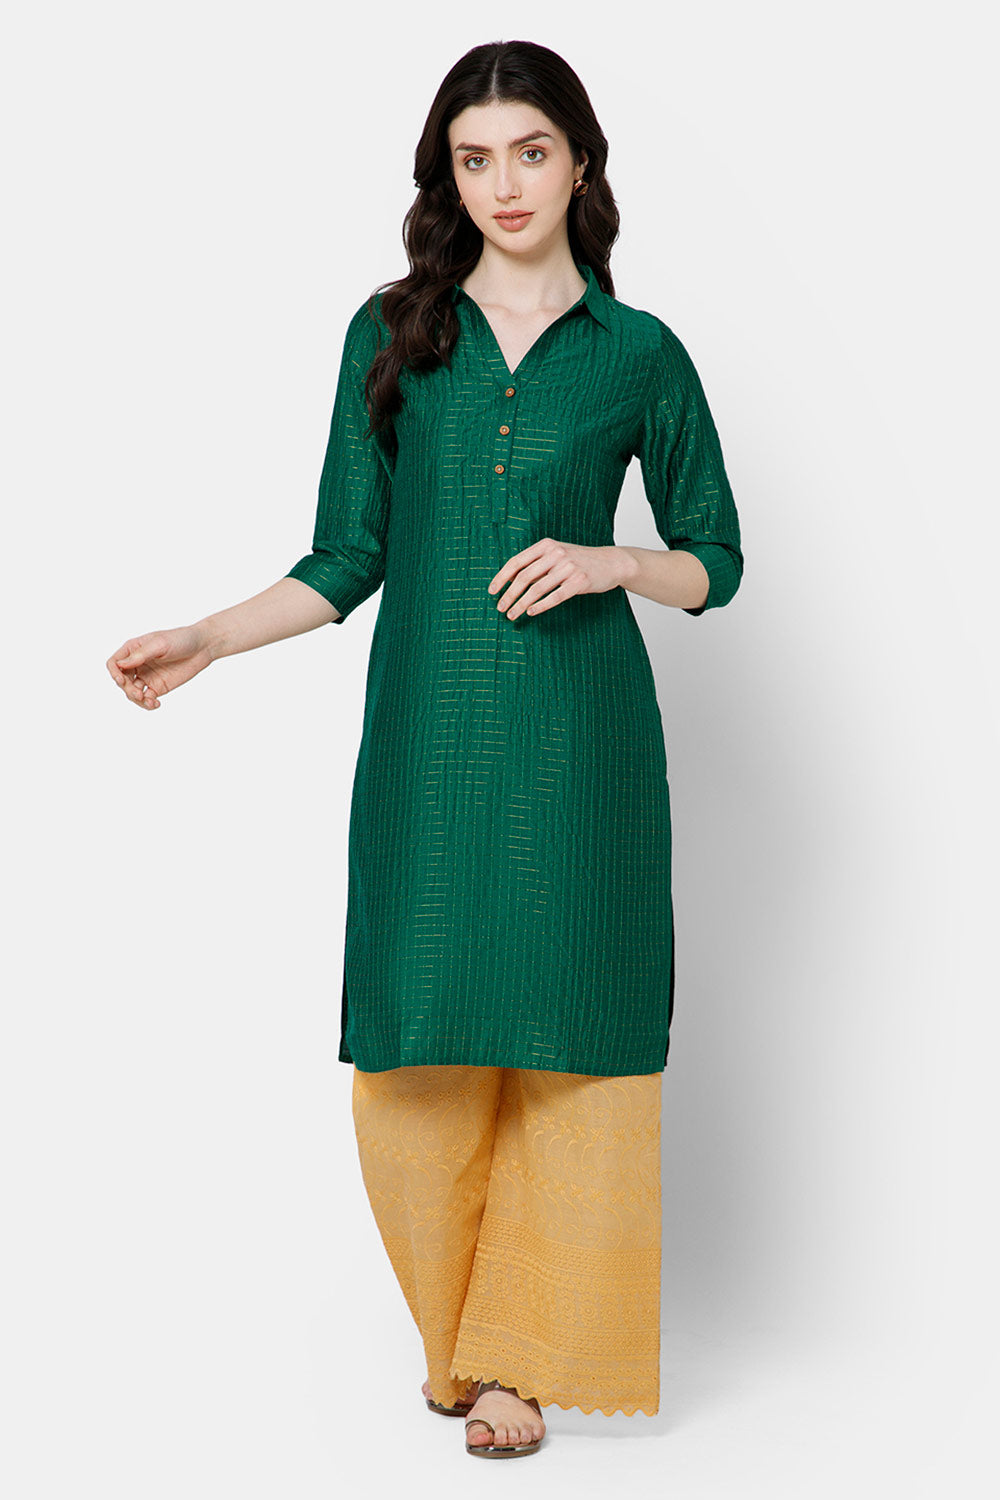 Mythri Women's Kurthi Anarkali Casual wear - Green - KU65